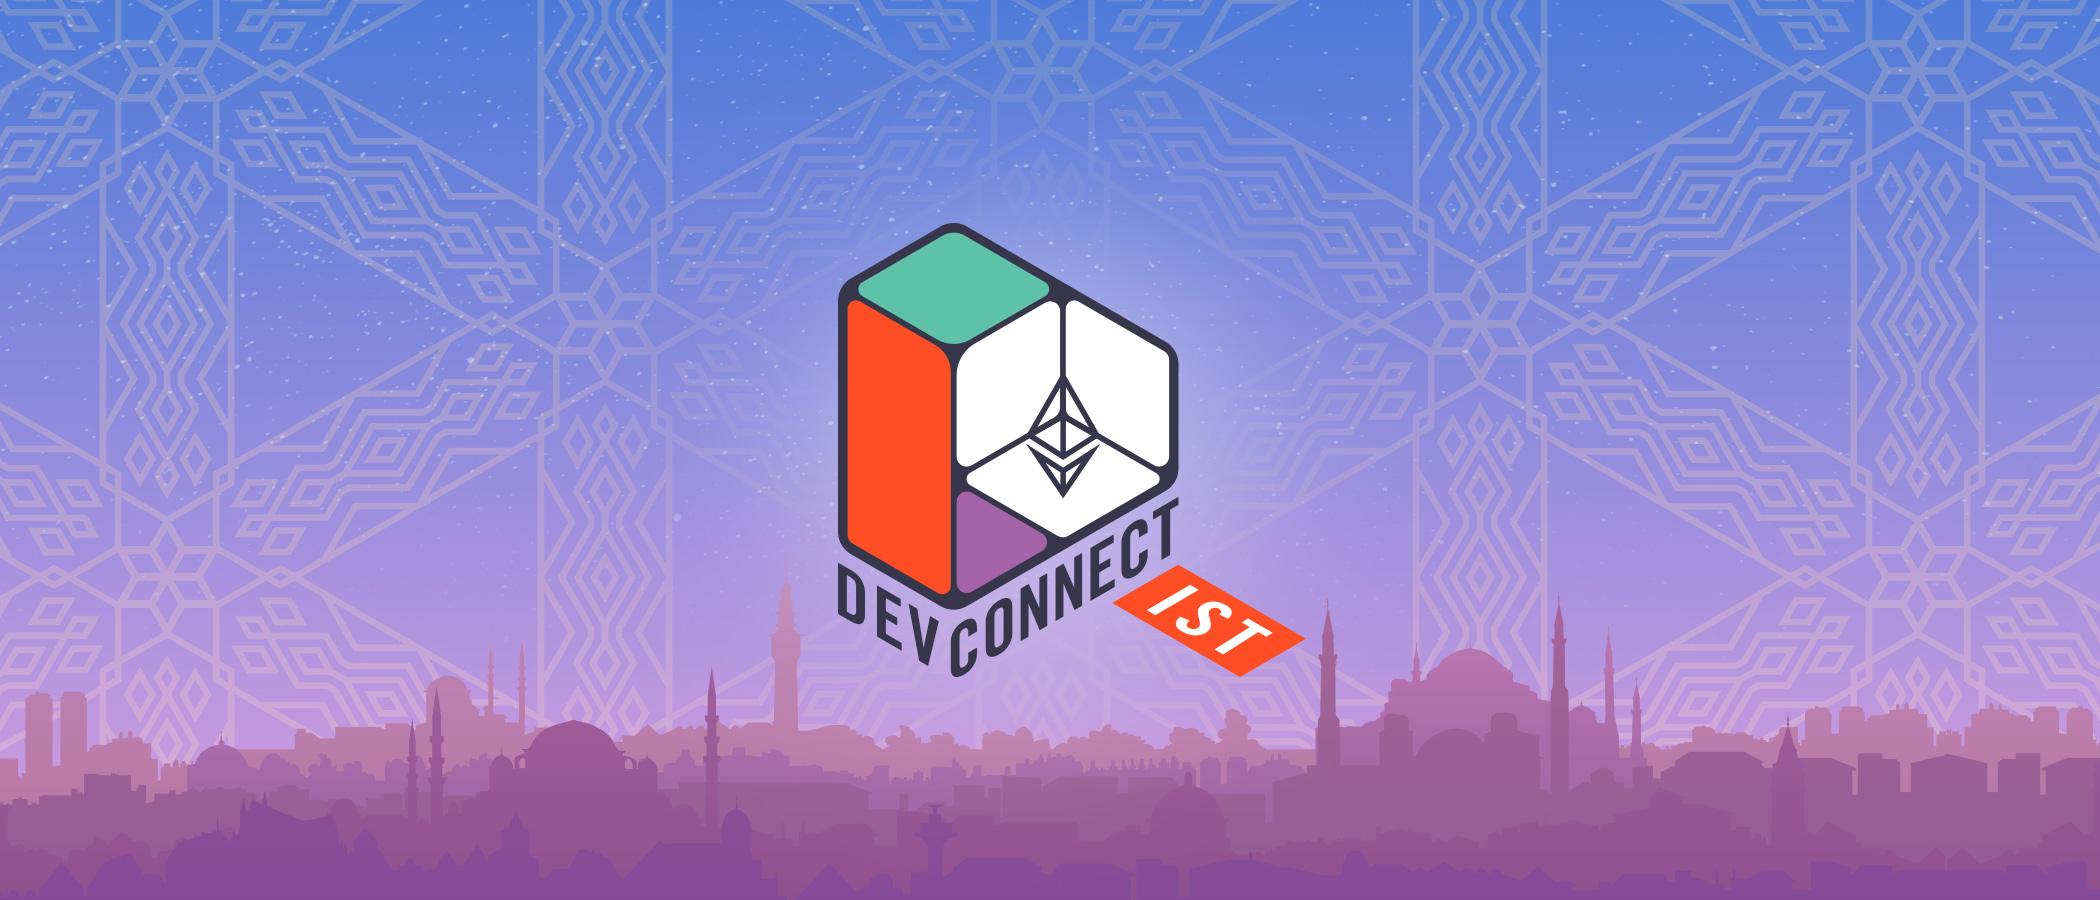 Devconnect يعود إليكم من جديد! سنلتقي سويًا هذا العام في إسطنبول.